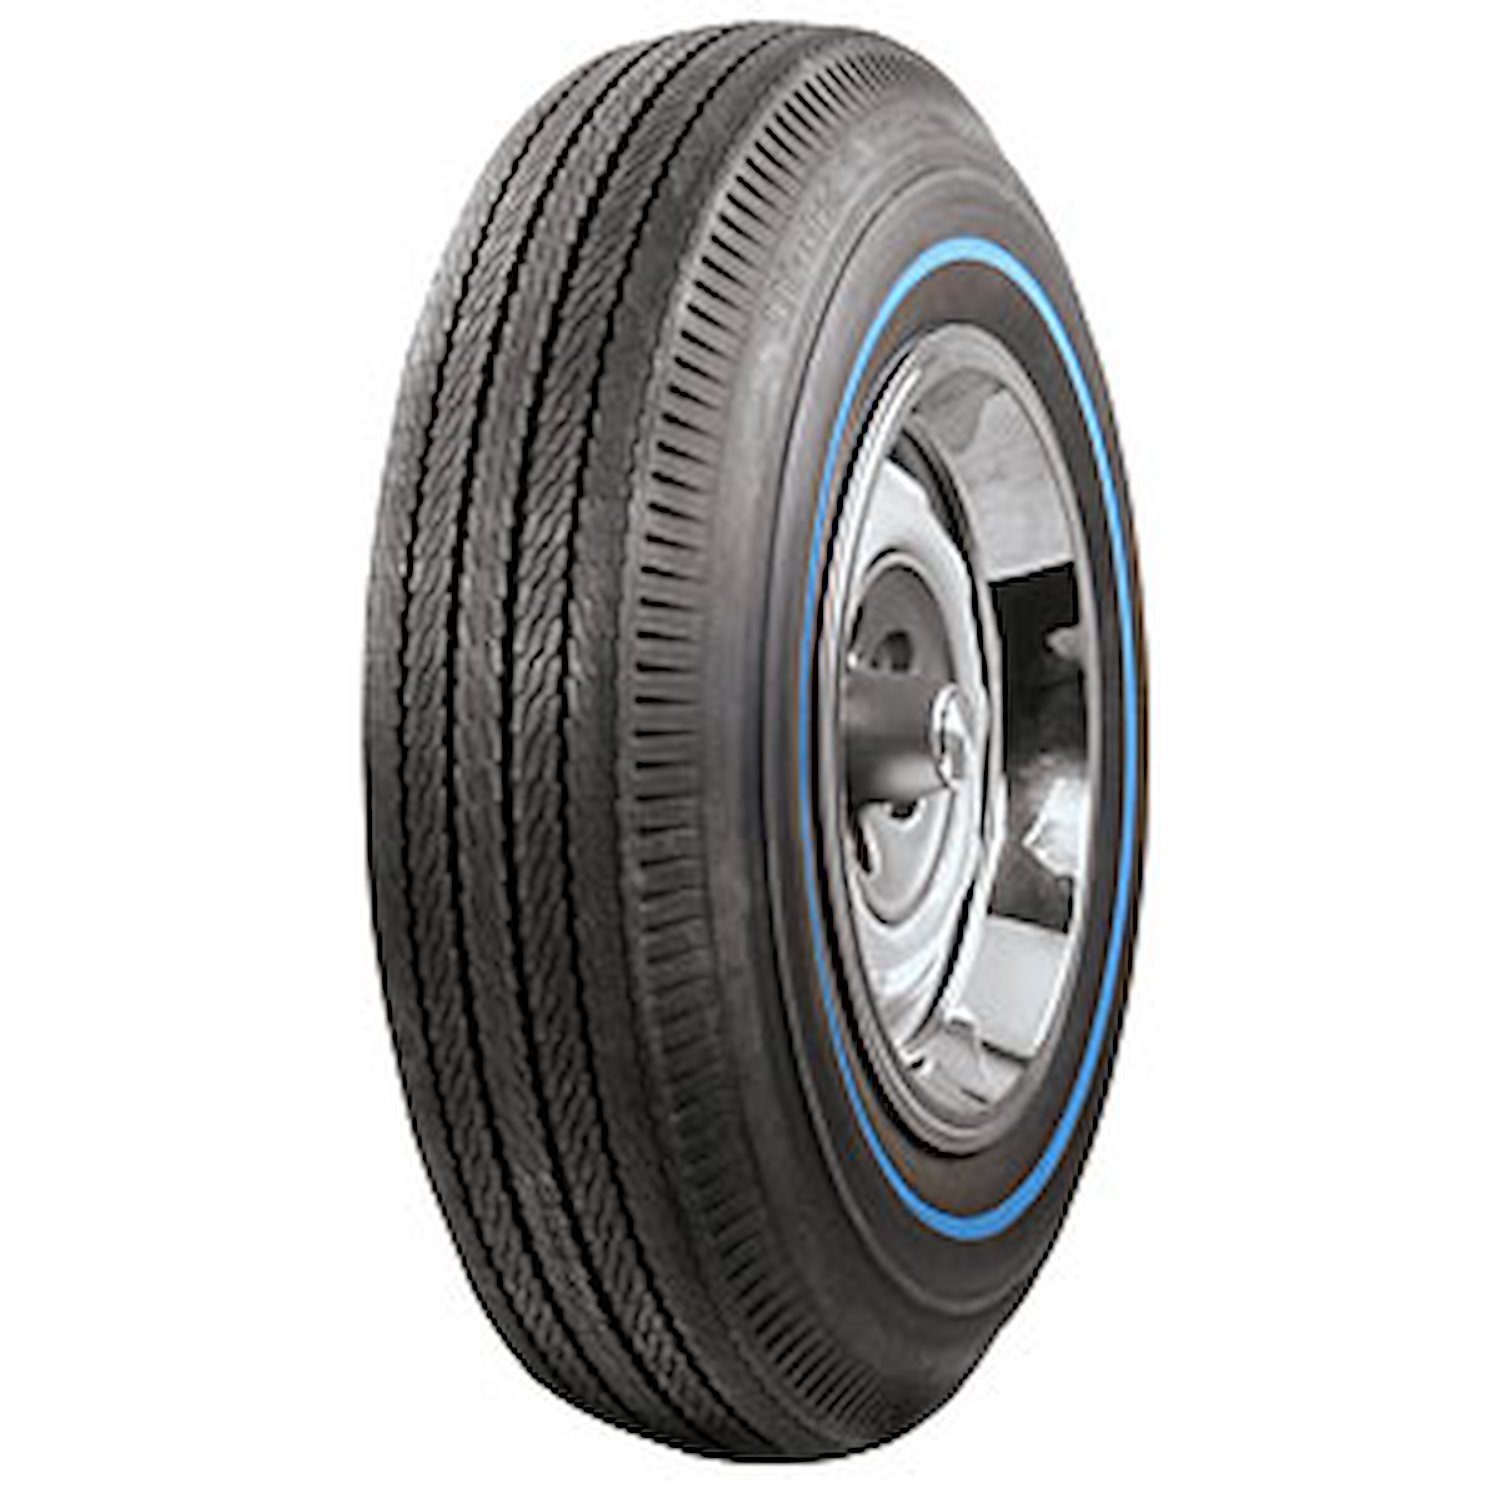 Coker BFGoodrich Silvertown Blueline Bias Ply Tire 775-14